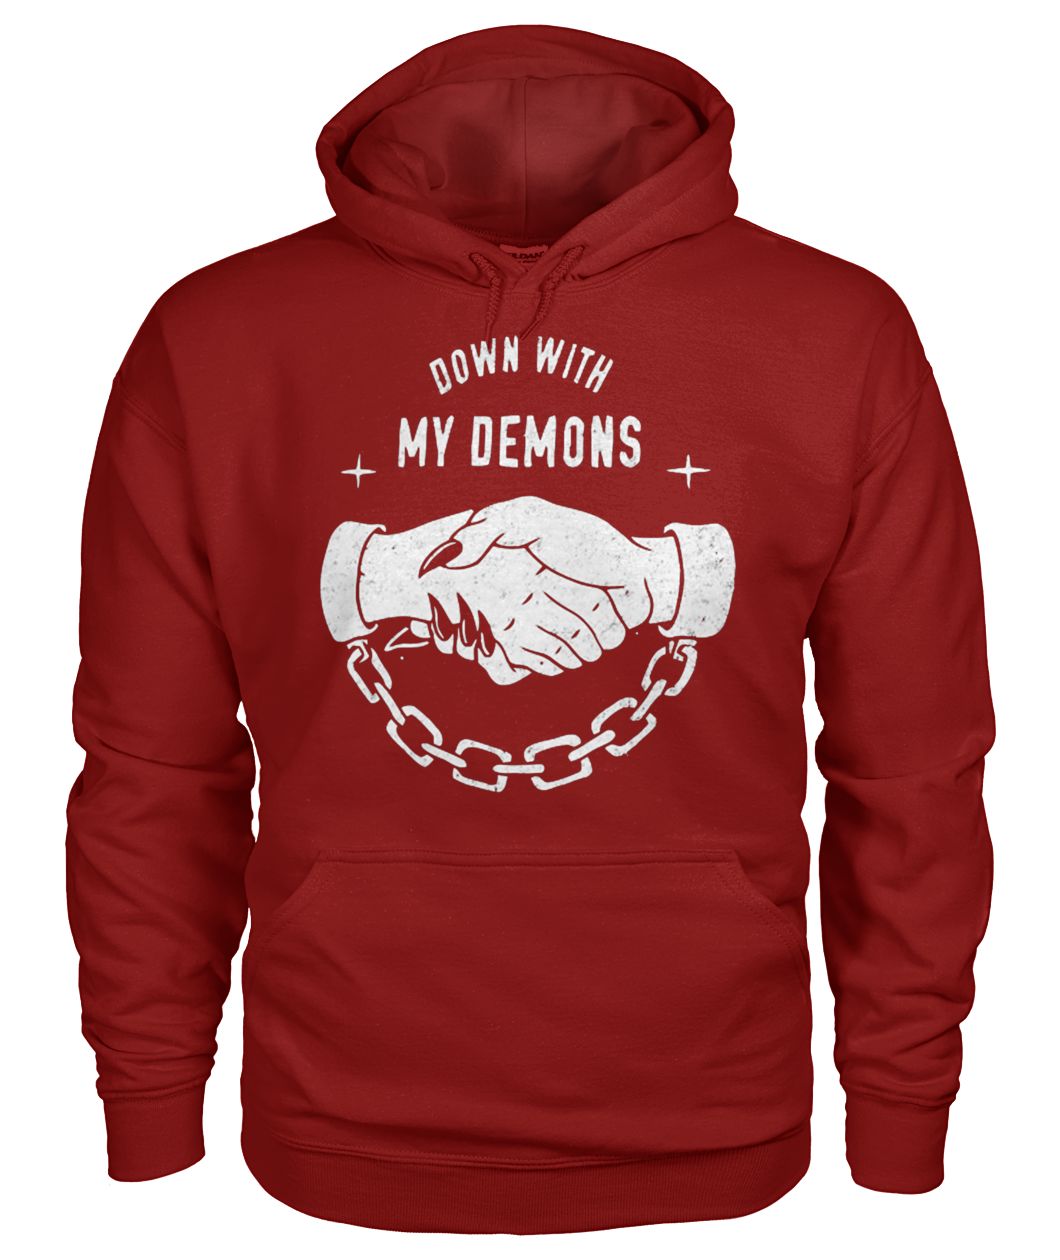 Down with my demons gildan hoodie